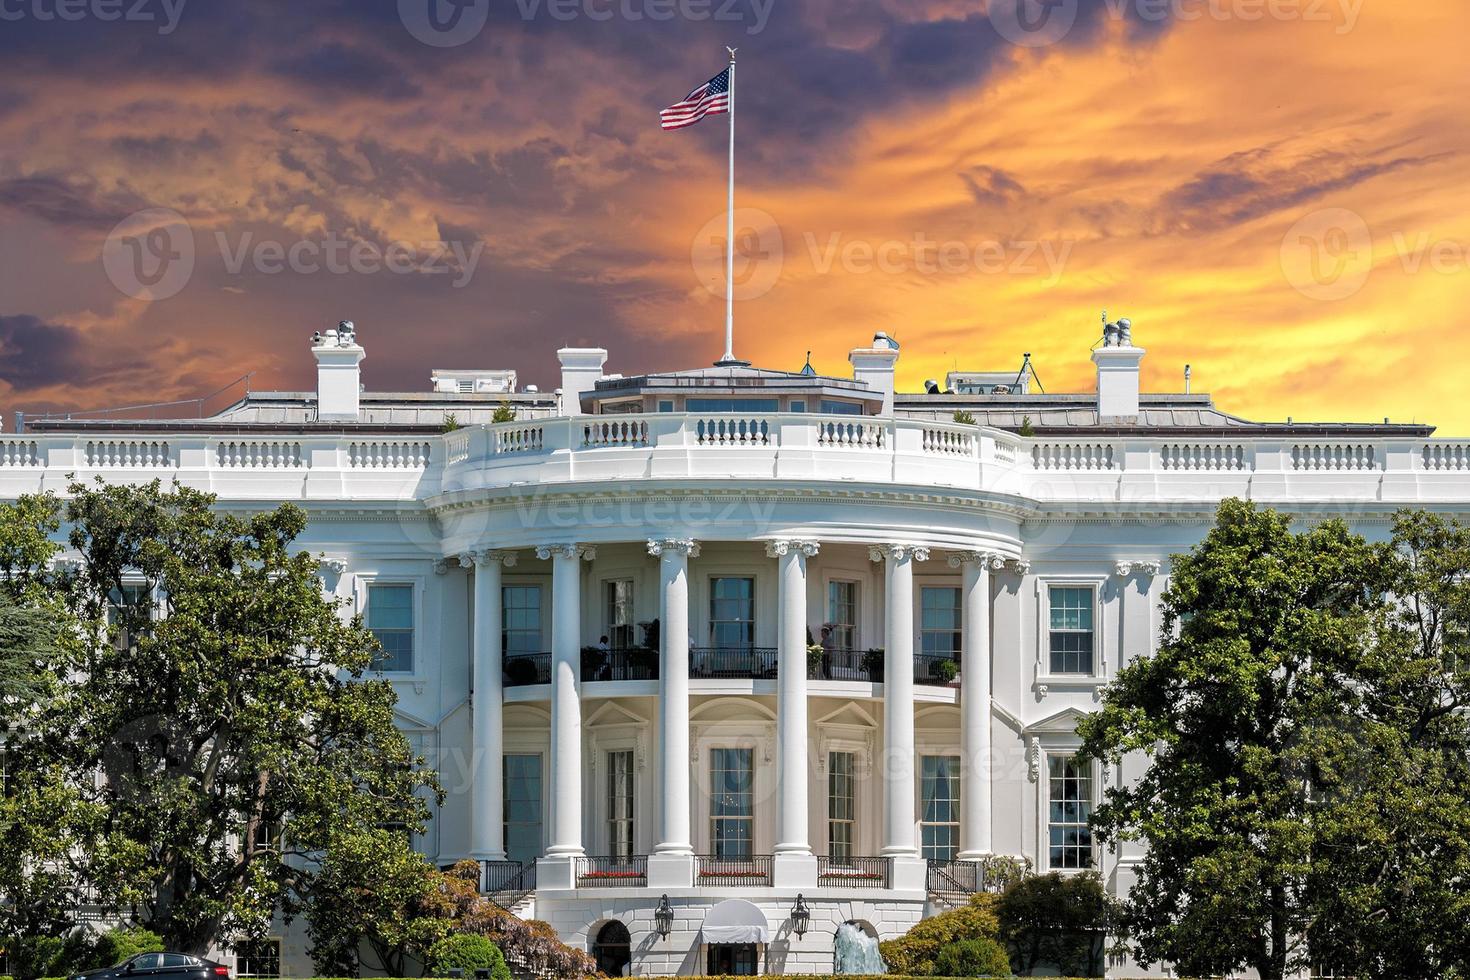 Washington White House on sunset photo